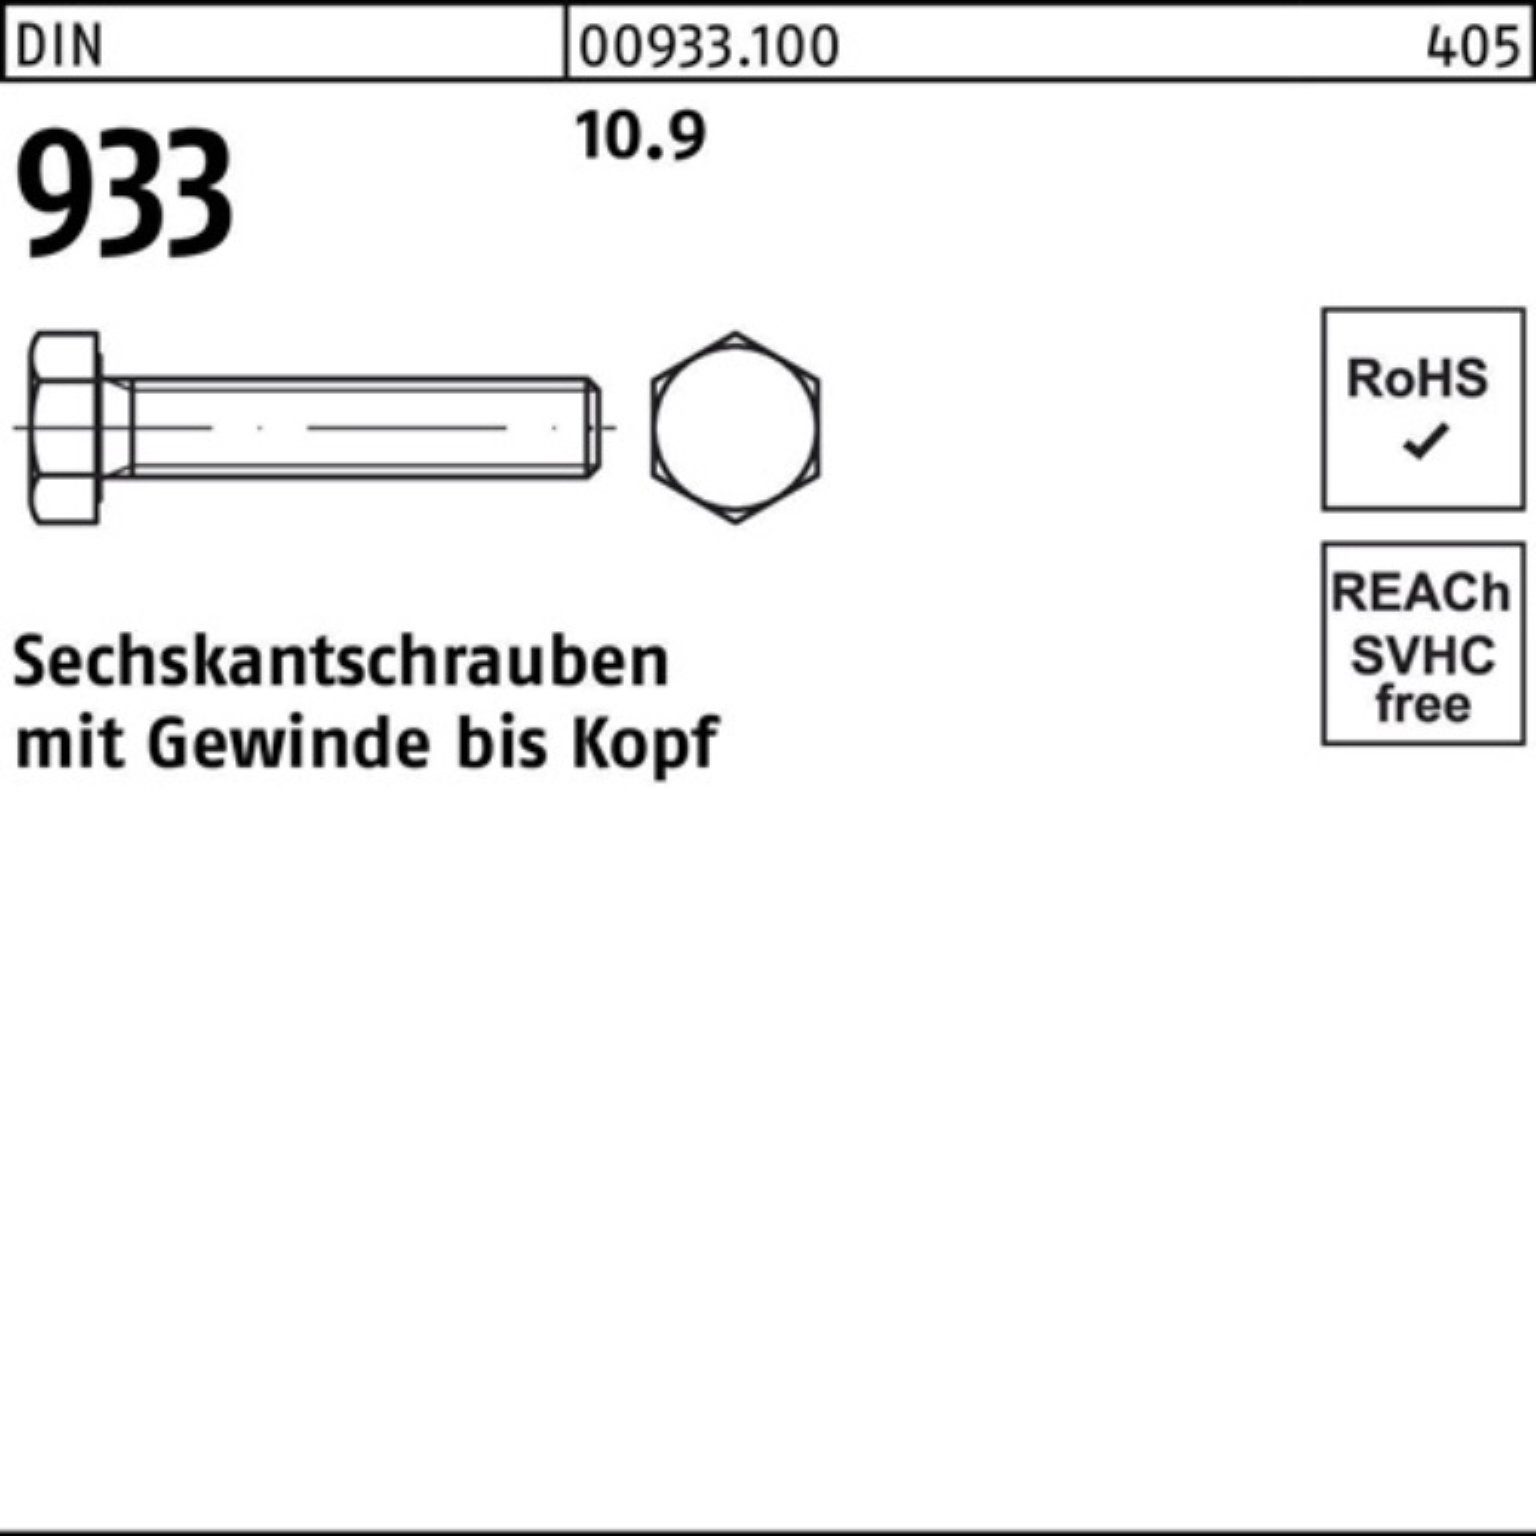 Sechskantschraube DIN VG Reyher 100 DIN Stück M33x 1 100er 10.9 Pack 933 933 Sechskantschraube